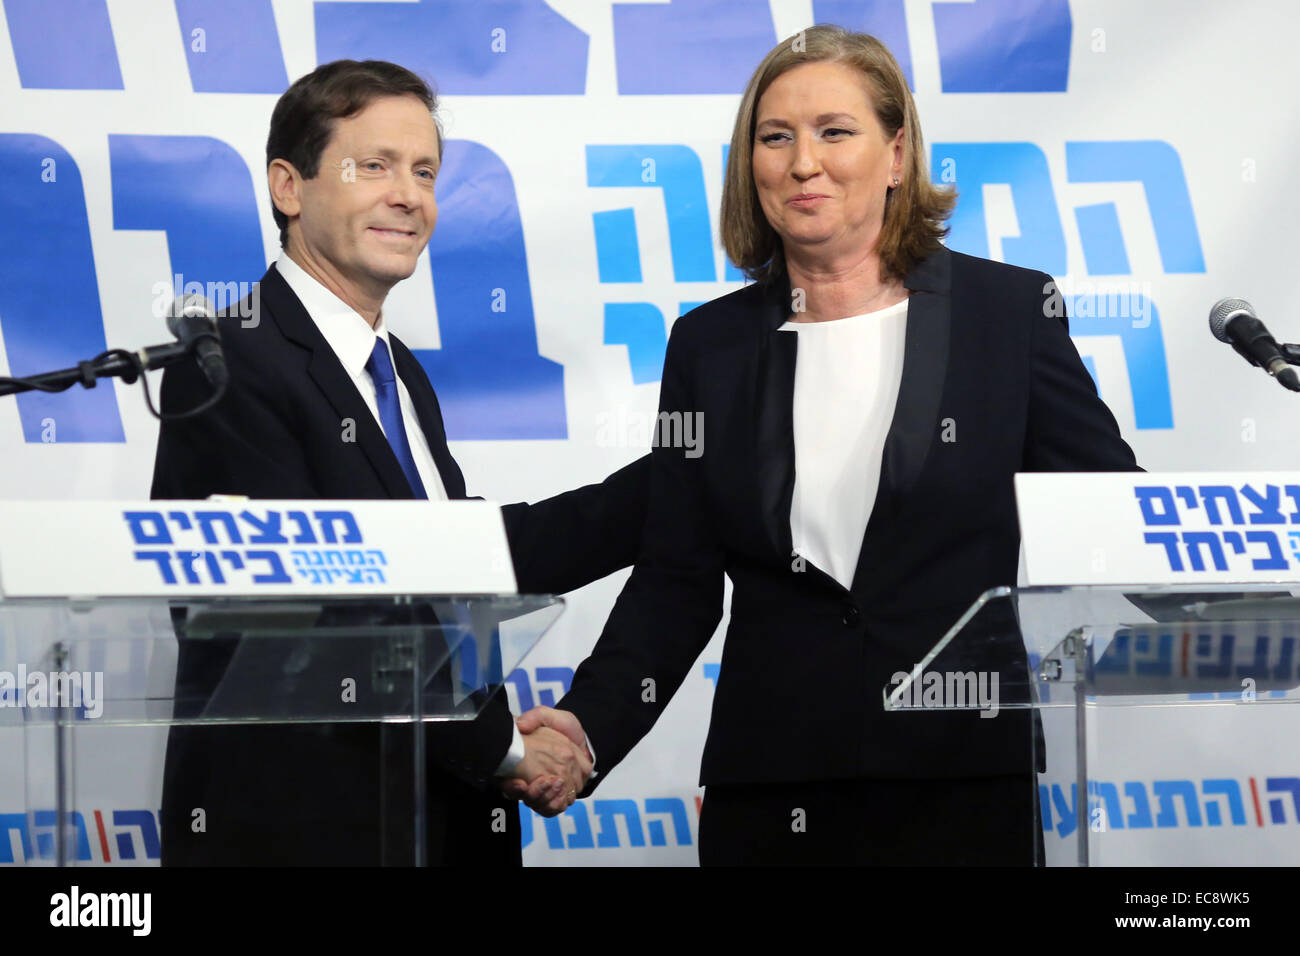 (141210) - TEL AVIV, Dic 10, 2014 (Xinhua) -- laburisti israeliani chief Yitzhak Herzog (L) scuote le mani con Israele dell ex ministro della giustizia Tzipi Livni durante una conferenza stampa a Tel Aviv, Israele, a Dic. 10, 2014. Israele dell ex ministro della giustizia Tzipi Livni e il Partito Laburista chief Yitzhak Herzog ha annunciato mercoledì sono di unire le vostre mani prima del marzo 17 elezioni. In una conferenza stampa congiunta in Tel Aviv Mercoledì, Herzog, presidente del più grande centro-sinistra opposizione parlamentare e la Livni, capo del centro-sinistra Hatnua partito, ha annunciato il centro-sinistra elenco comune, mirando alla fine Foto Stock